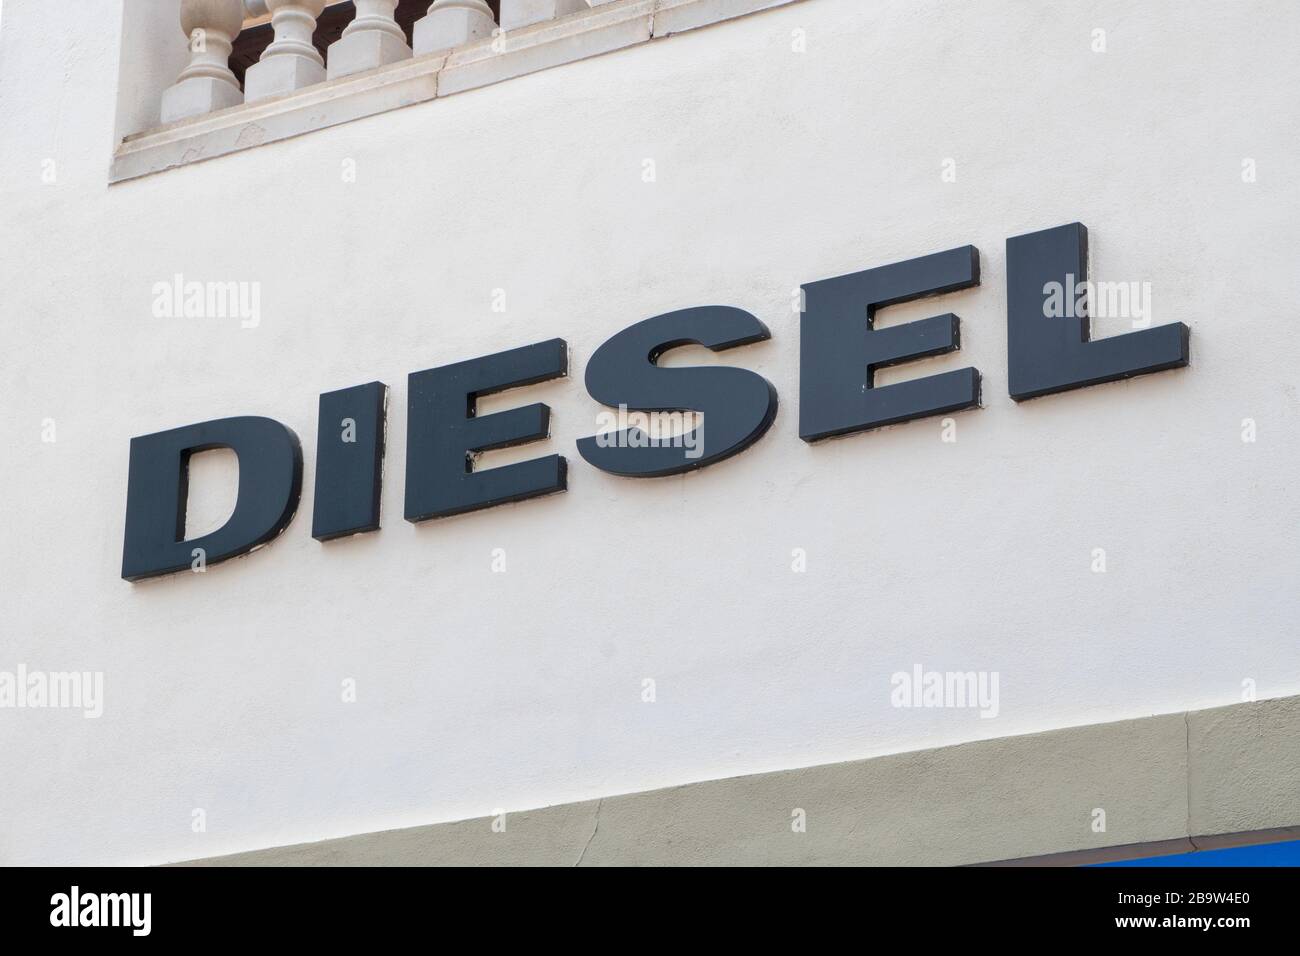 Palma de Mallorca, Spagna - 23 settembre 2017. Cartello del deposito diesel. Diesel S.p.A. è una società italiana di abbigliamento al dettaglio, con sede a Breganze, Italia. Foto Stock